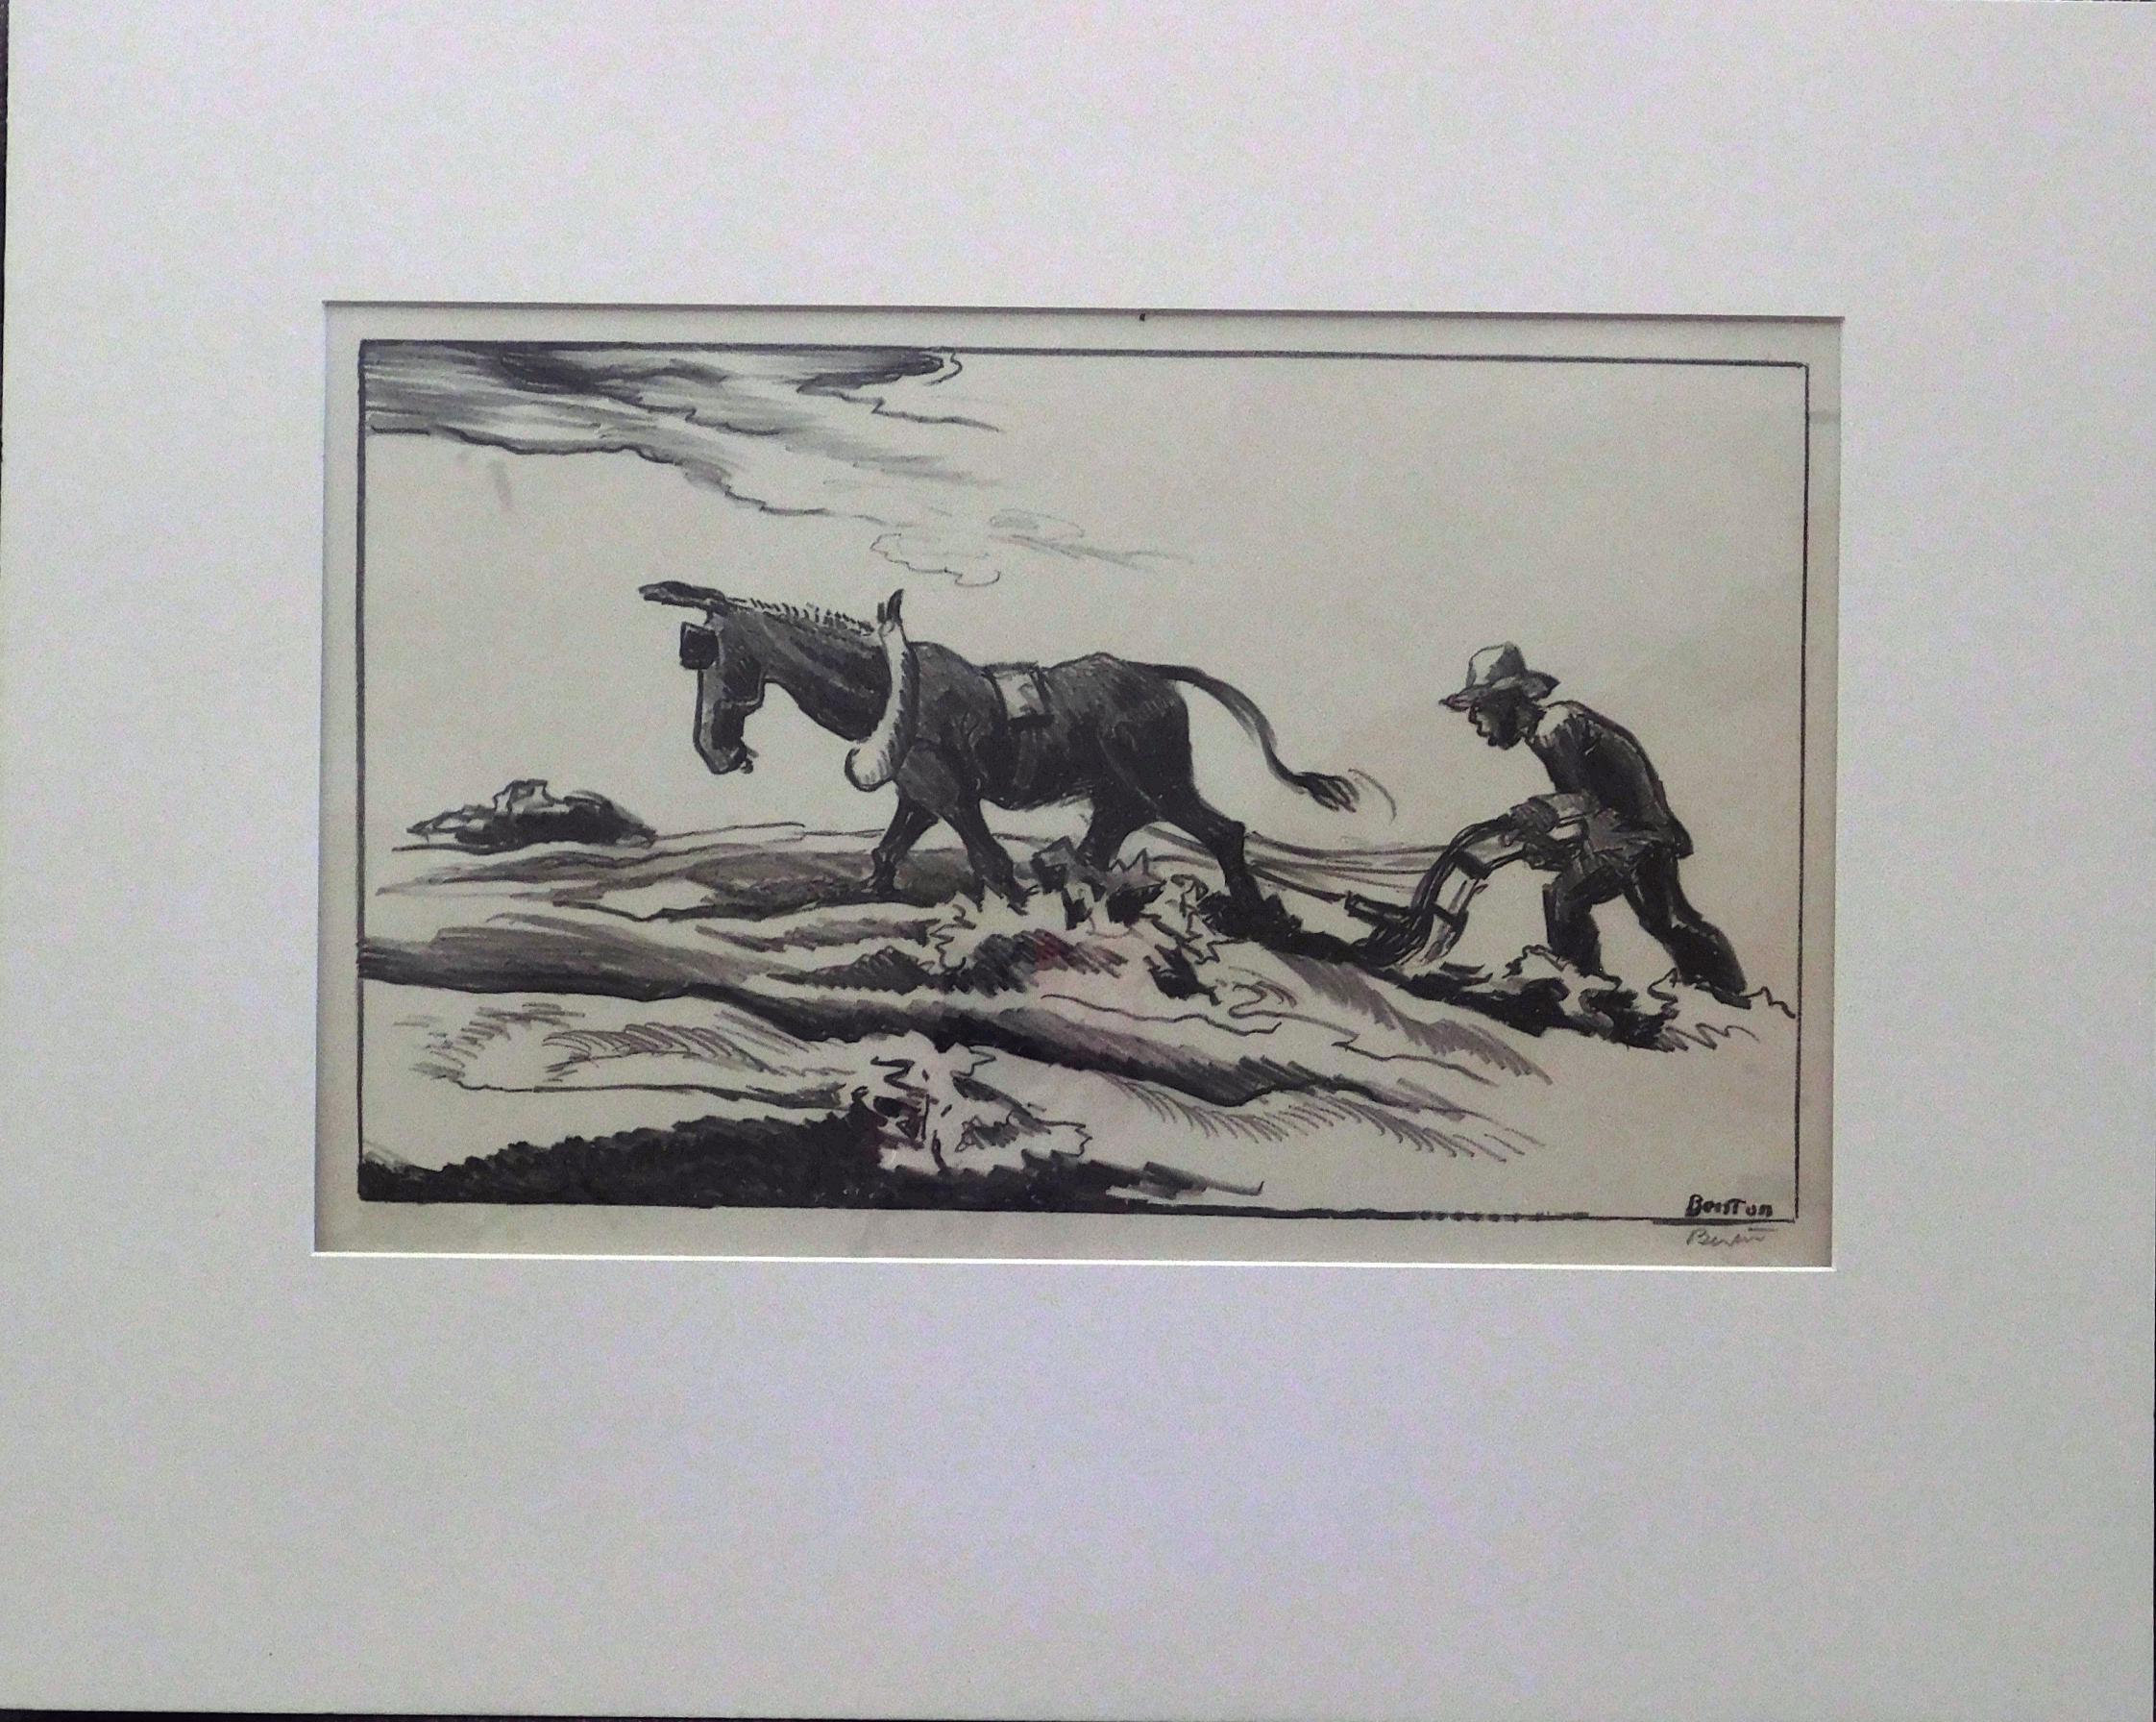 Thomas Hart Benton (1889-1975) Original Steinlithographie.
Titel: Unterpflügen (auch Ploughing), 1934. 
Ungerahmt und präsentiert in einem 4-lagigen Museumspassepartout.
Bildgröße: 8 